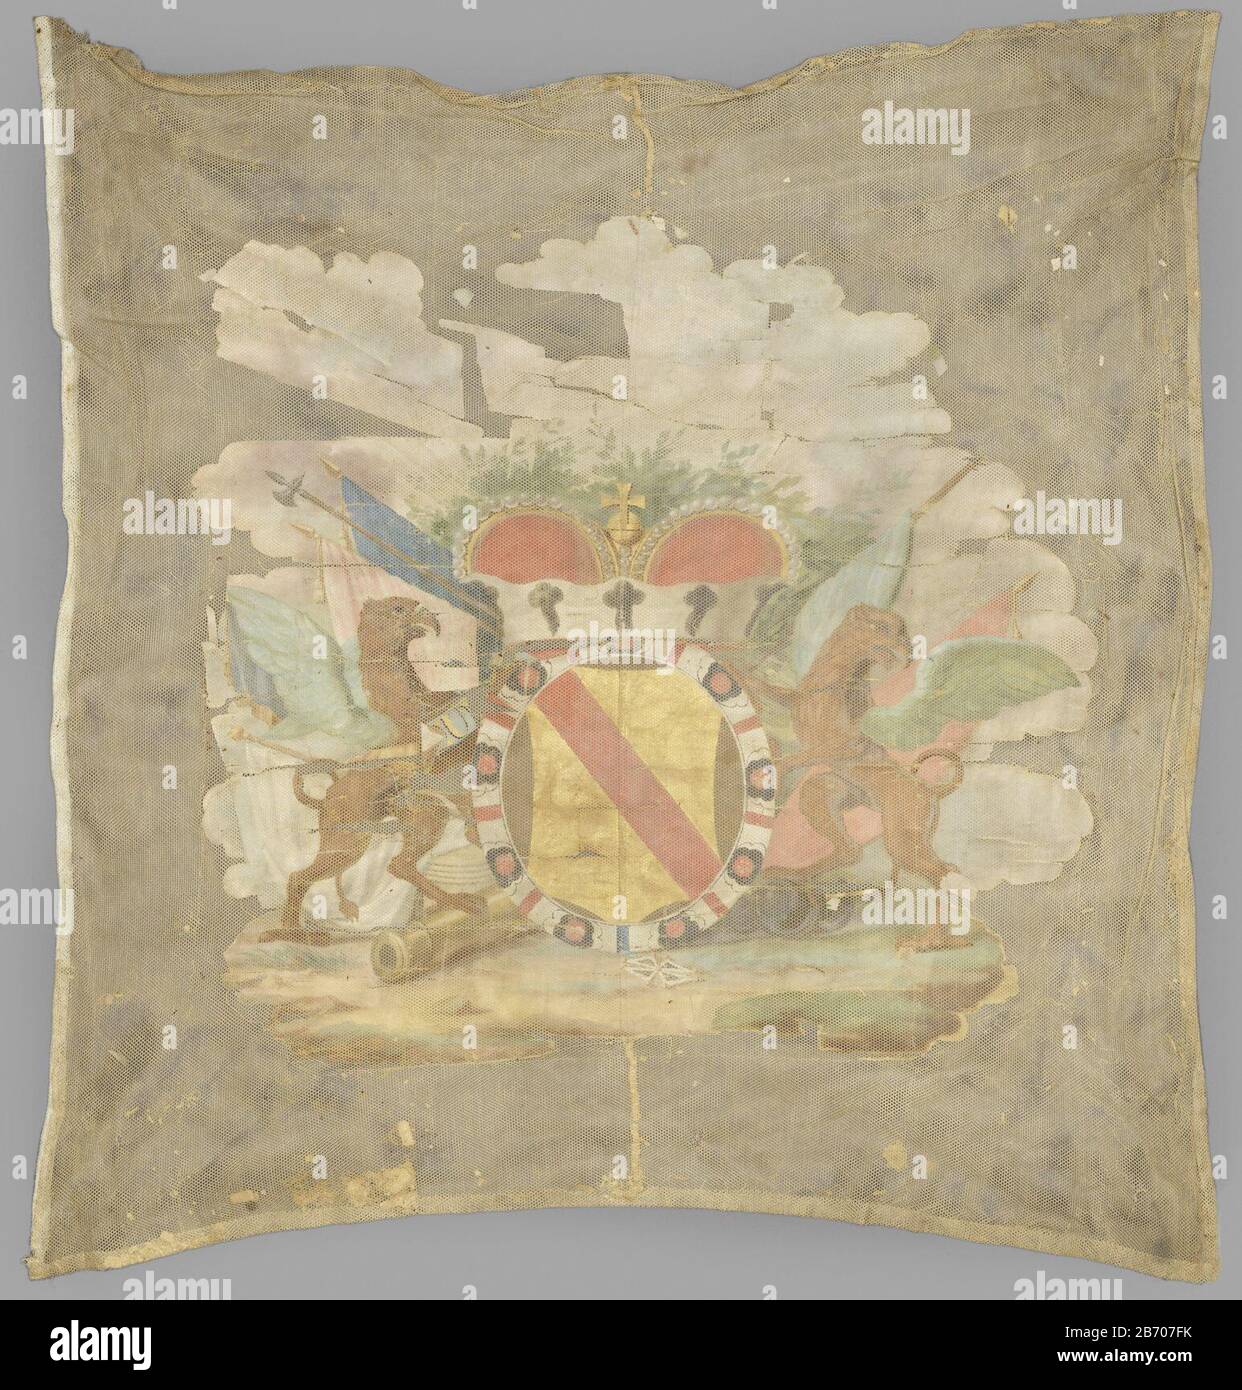 Kolonelsvaandel van een der Regimentslisten Baden-Württemberg, op het midden het wapen van Baden, gedekt door vorstenkroon, omgeven door een wit, rood en zwart versierde Band. Het geheel wordt gehouden door twee griffioenen (aan vluchtzijde afgewend), en is geplaatst op een trofee van vaandels, kanonnen enz.; achter de kroon een groene bosschage, Stockfoto